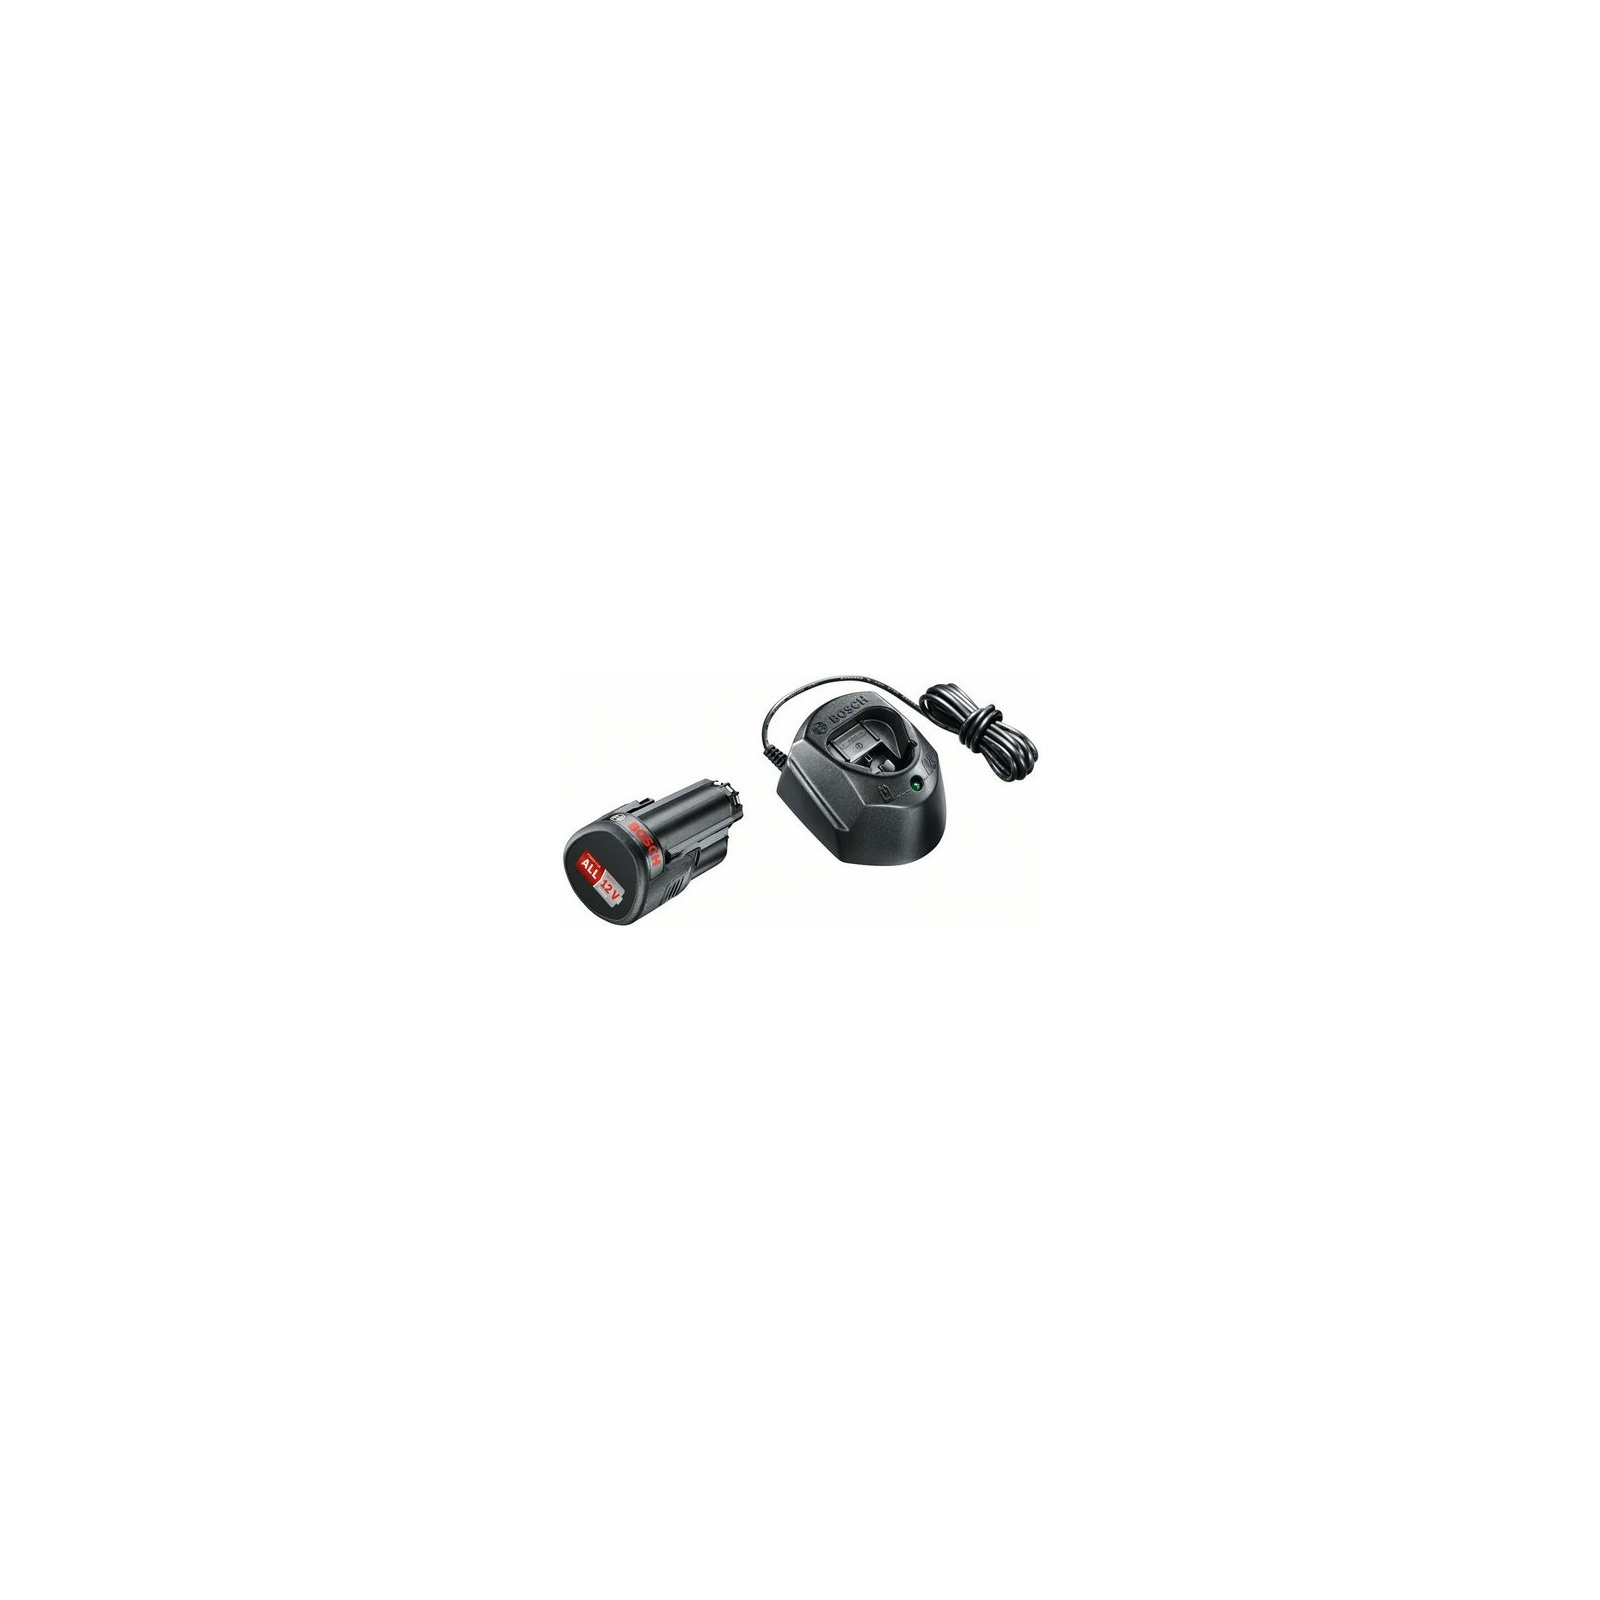 Набор аккумулятор + зарядное устройство Bosch 12В, 1.5Ач и ЗУ GAL 1210 CV (1.600.A01.L3D)